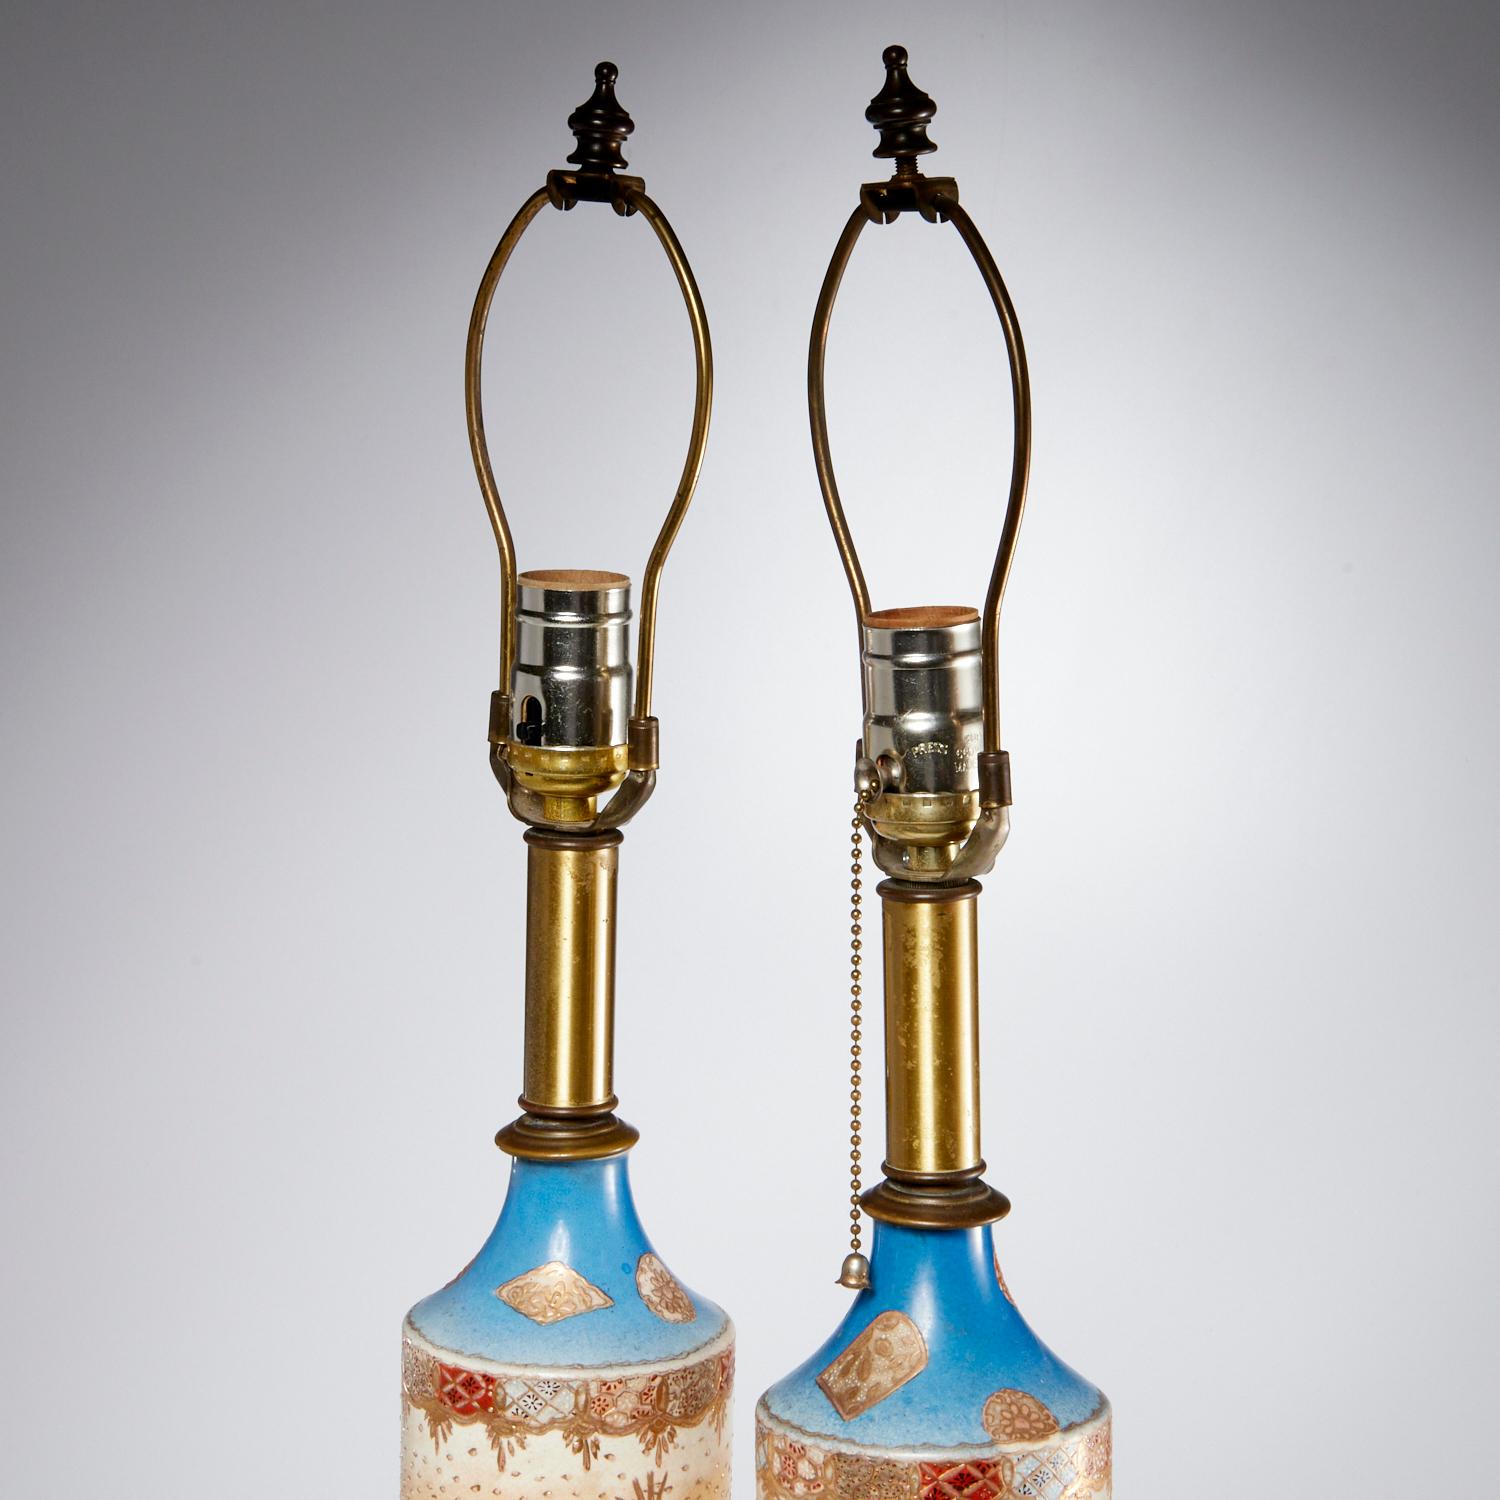 Paire de lampes de table à vase japonais Satsuma de la fin du 19e siècle, décorées de guerriers japonais, avec des accents floraux et dorés. Probablement de la période Meiji. Cette paire de lampes en forme de colonne, avec une base, une douille et